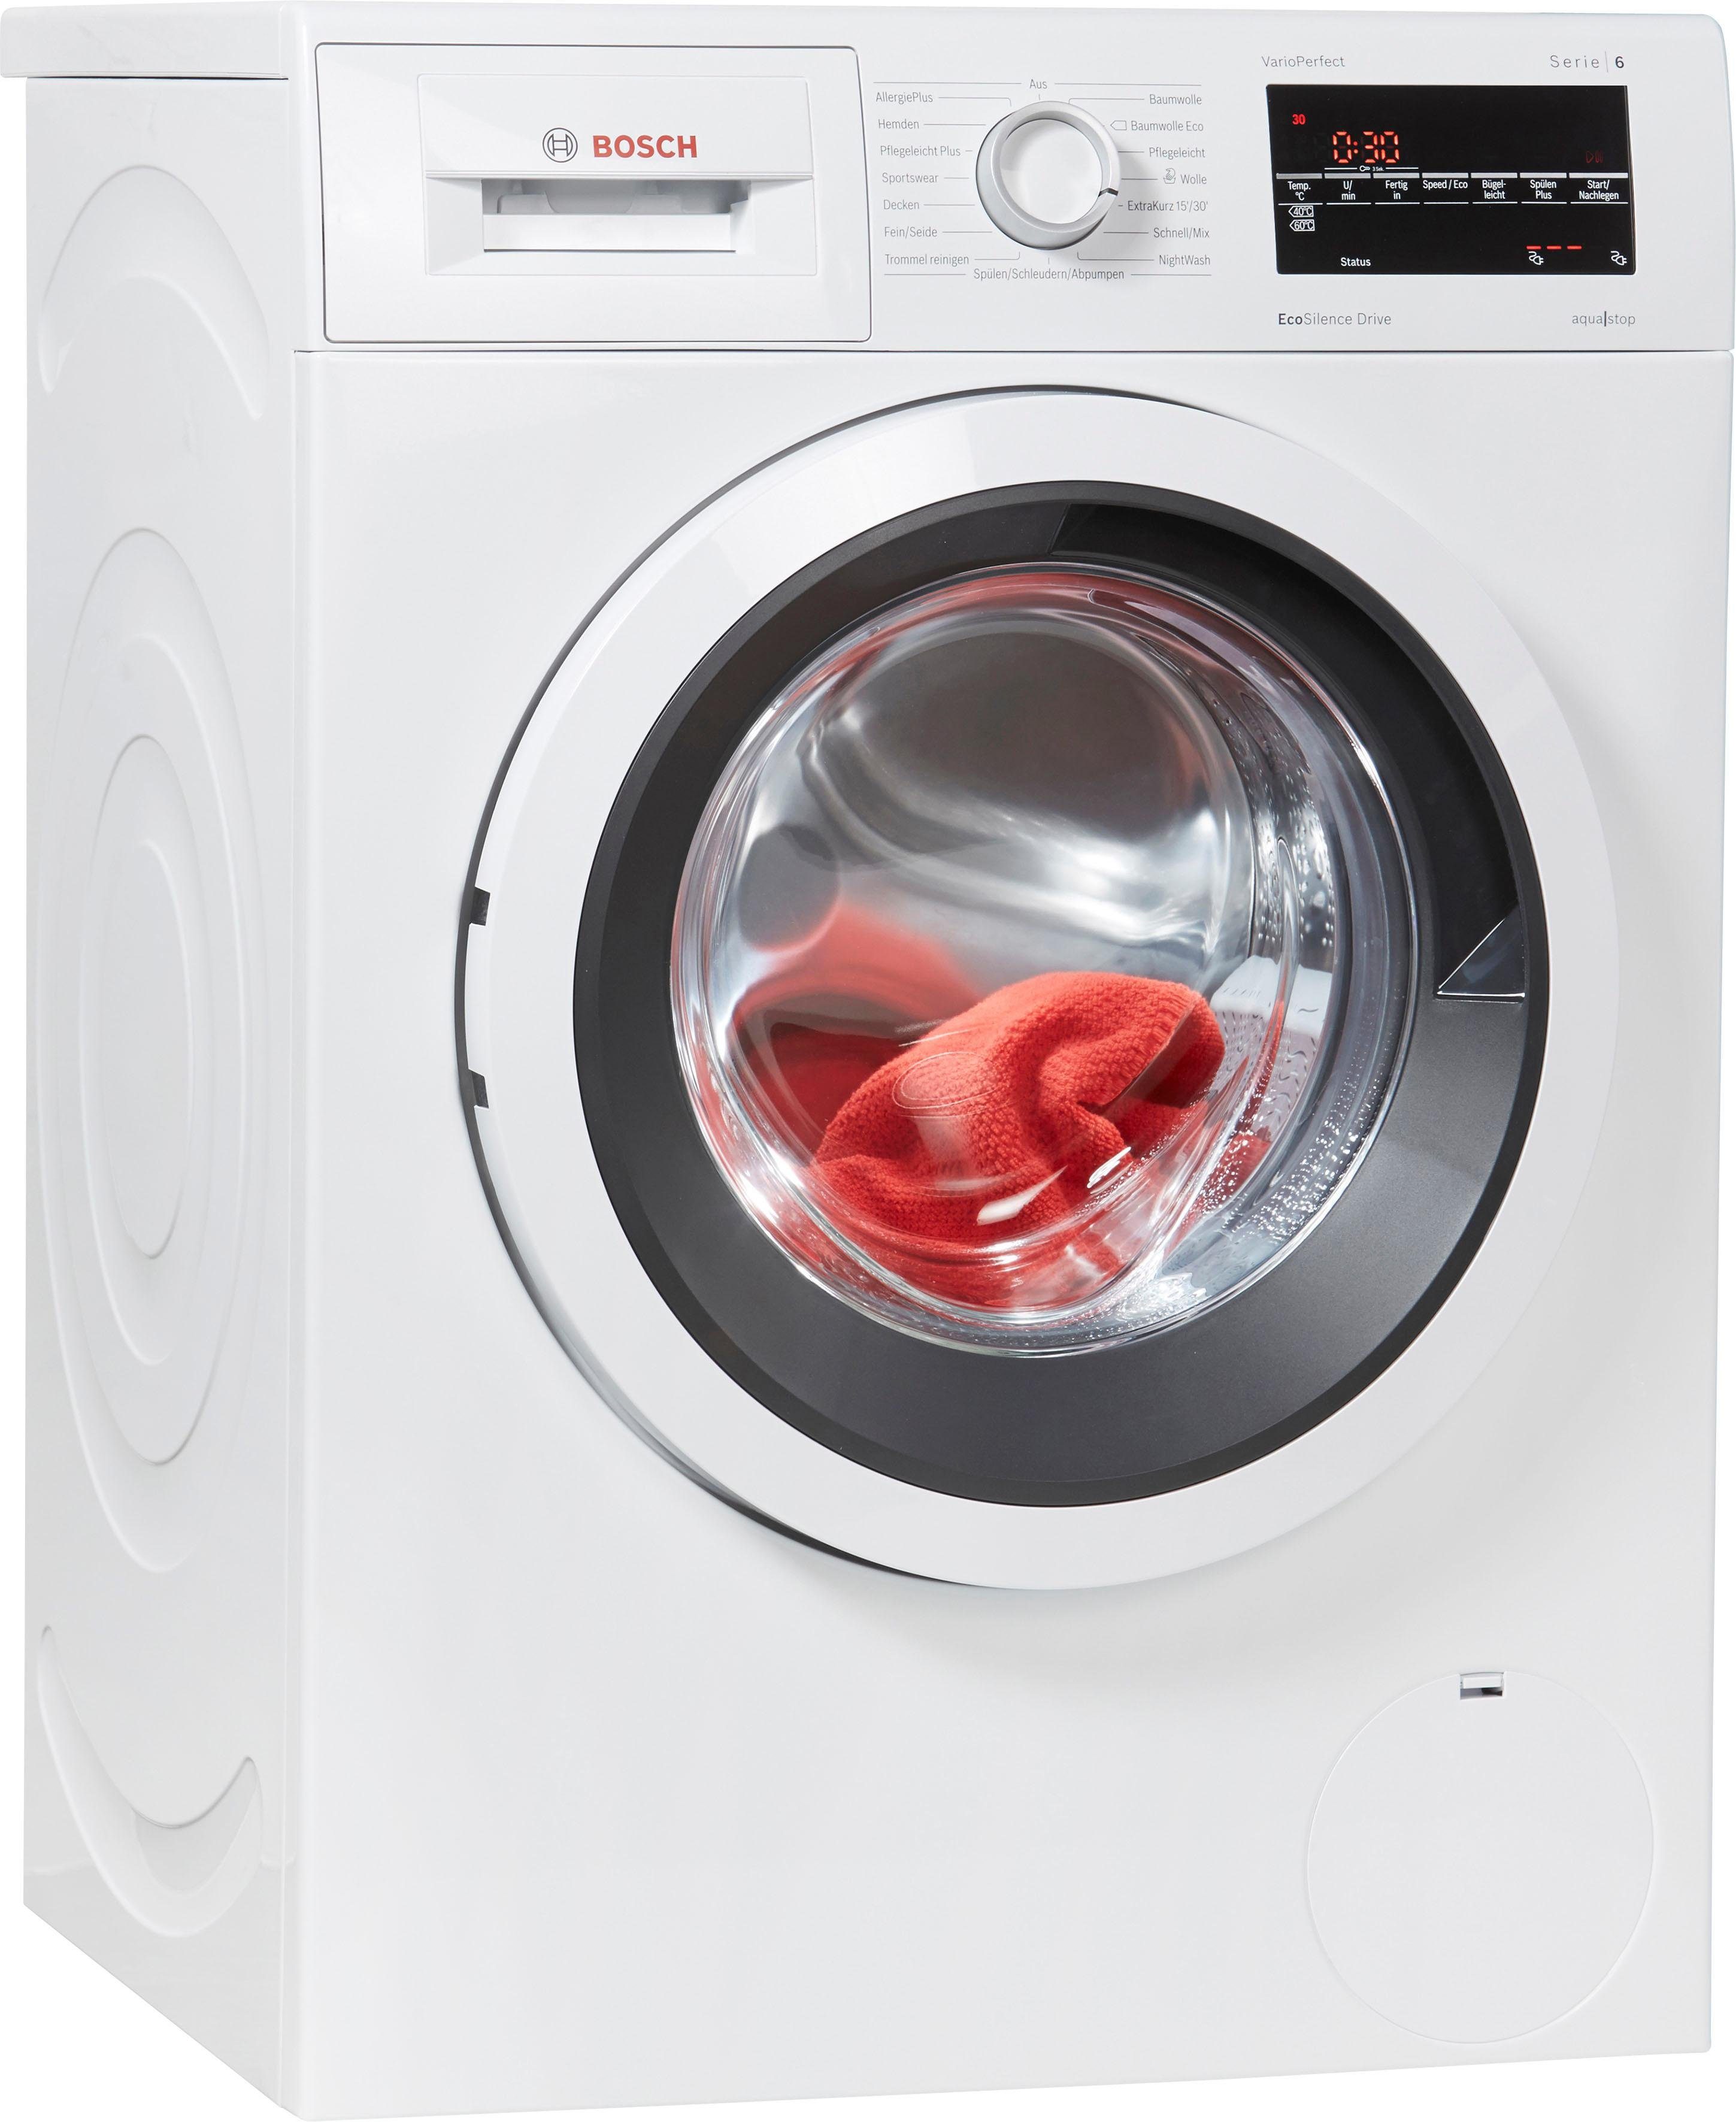 BOSCH Waschmaschine Serie 6 WAT284V1, 8 kg, 1400 U/min, aquastop online  kaufen | OTTO